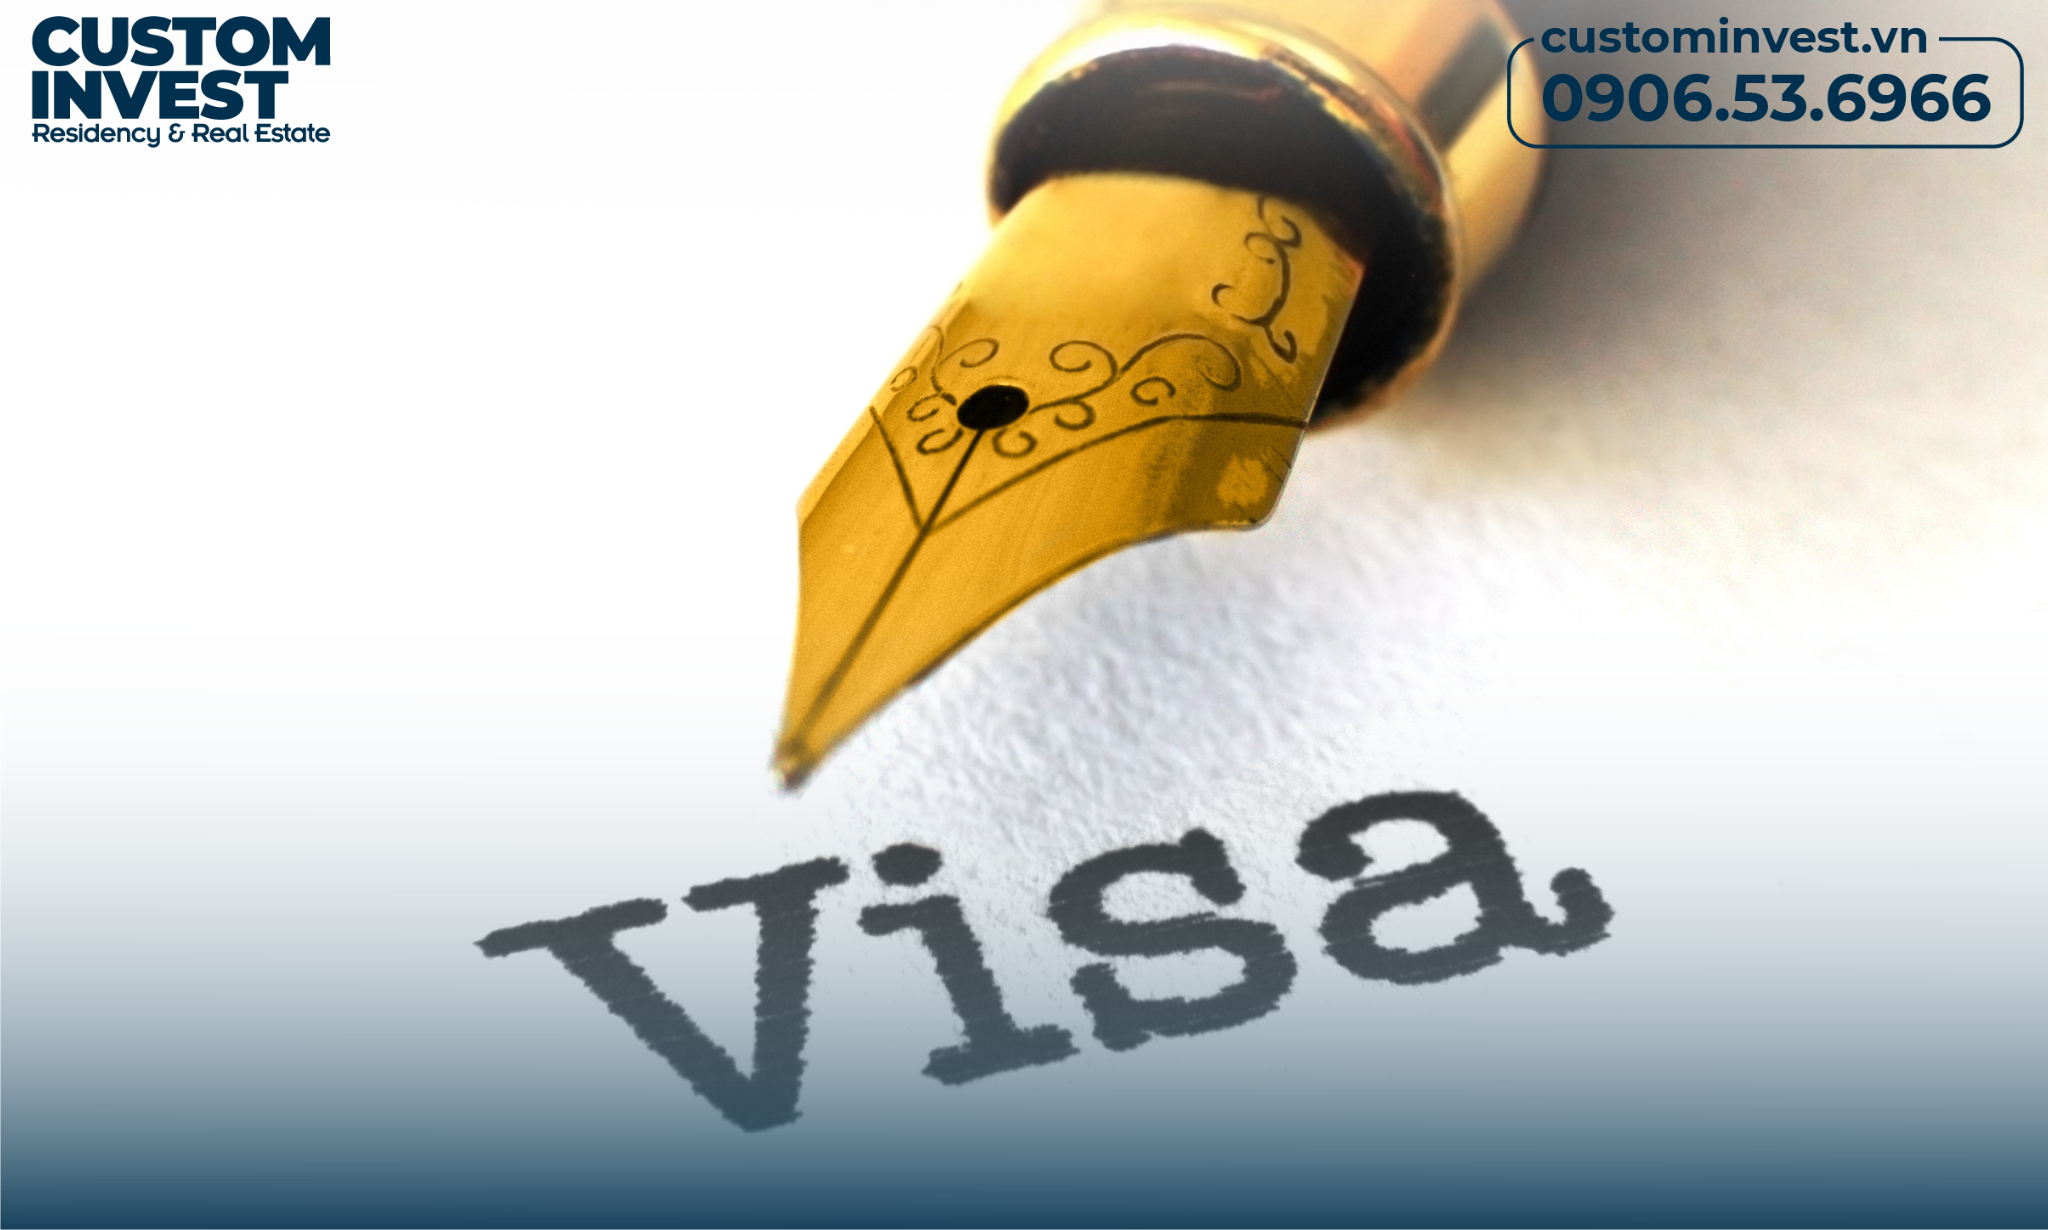 Quy trình nộp hồ sơ visa kinh doanh mỹ